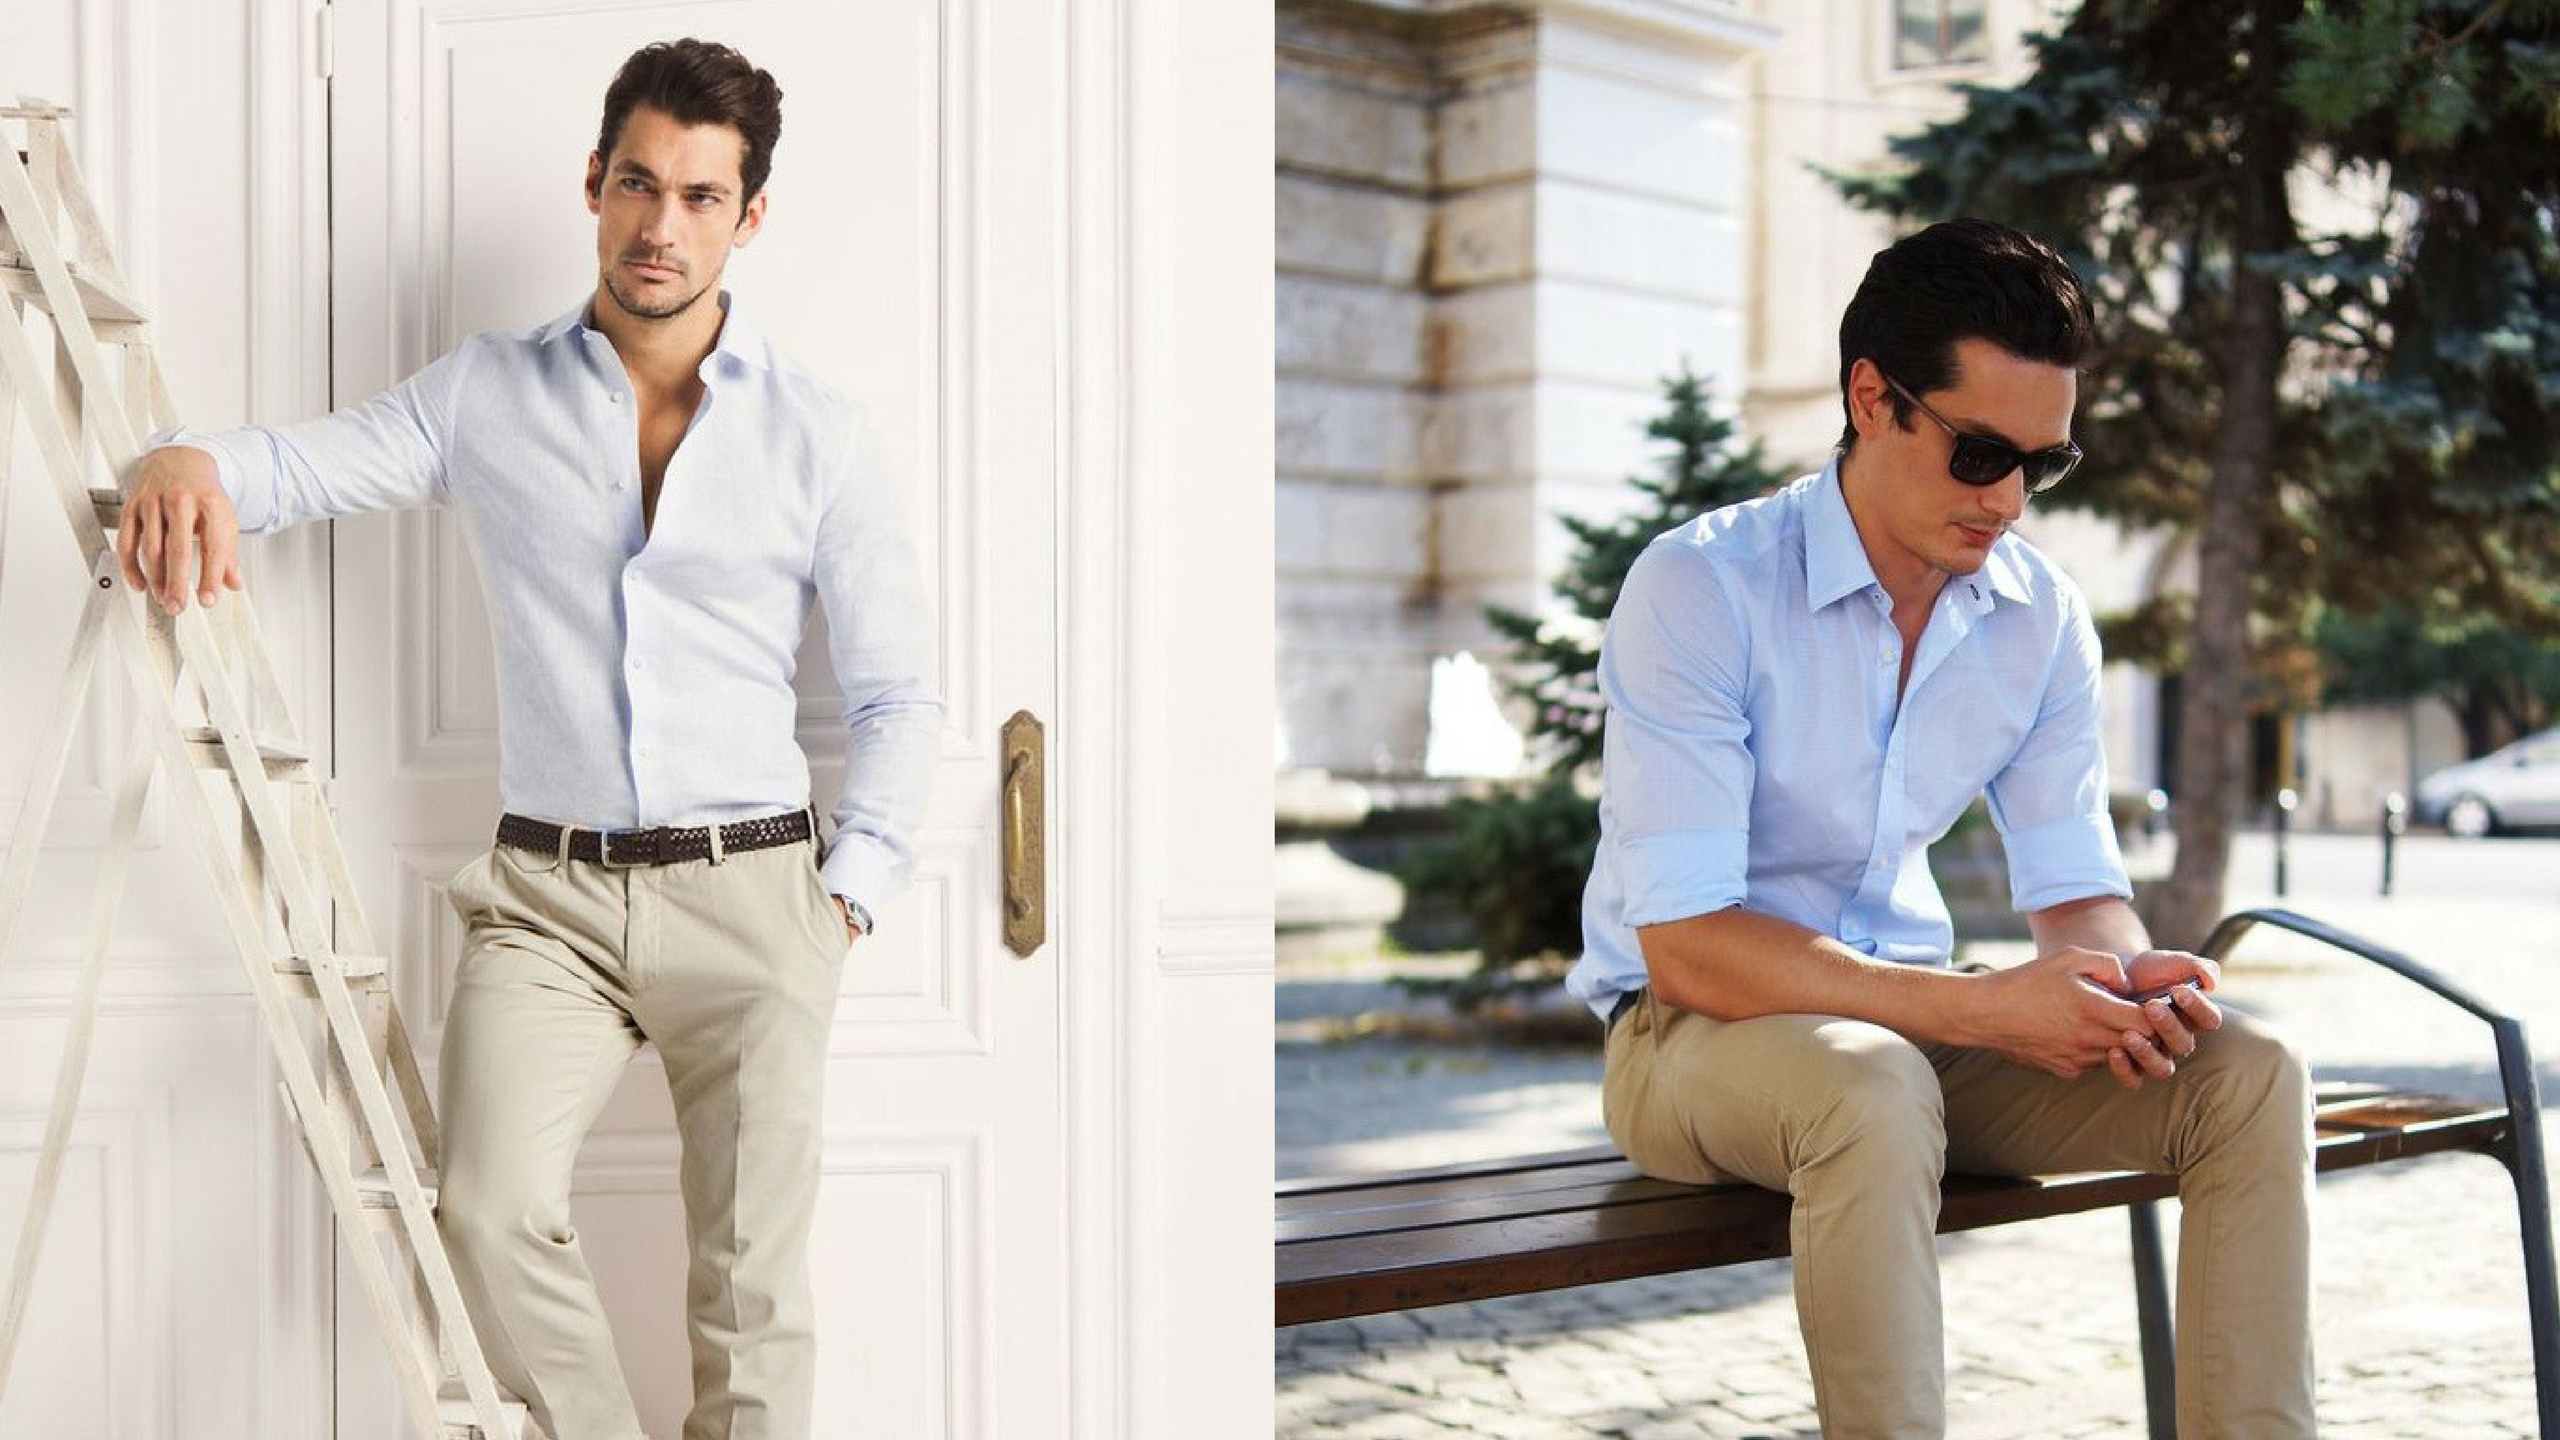 Офисный стиль мужской. Летний деловой образ мужчины. Летняя одежда для мужчин. Офисная одежда для мужчин летом.